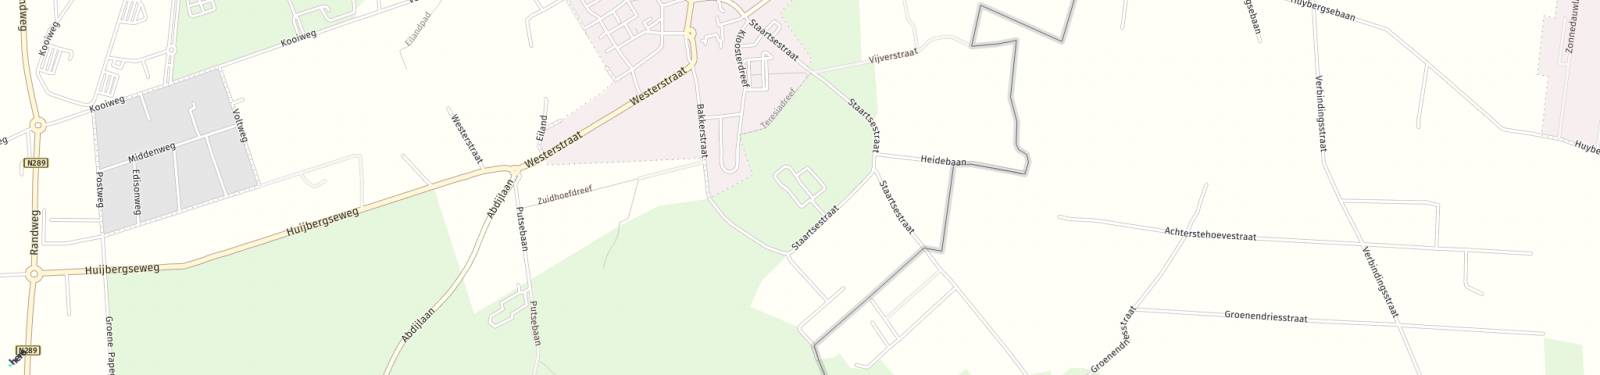 Kaart met locatie Bungalow Groenendries